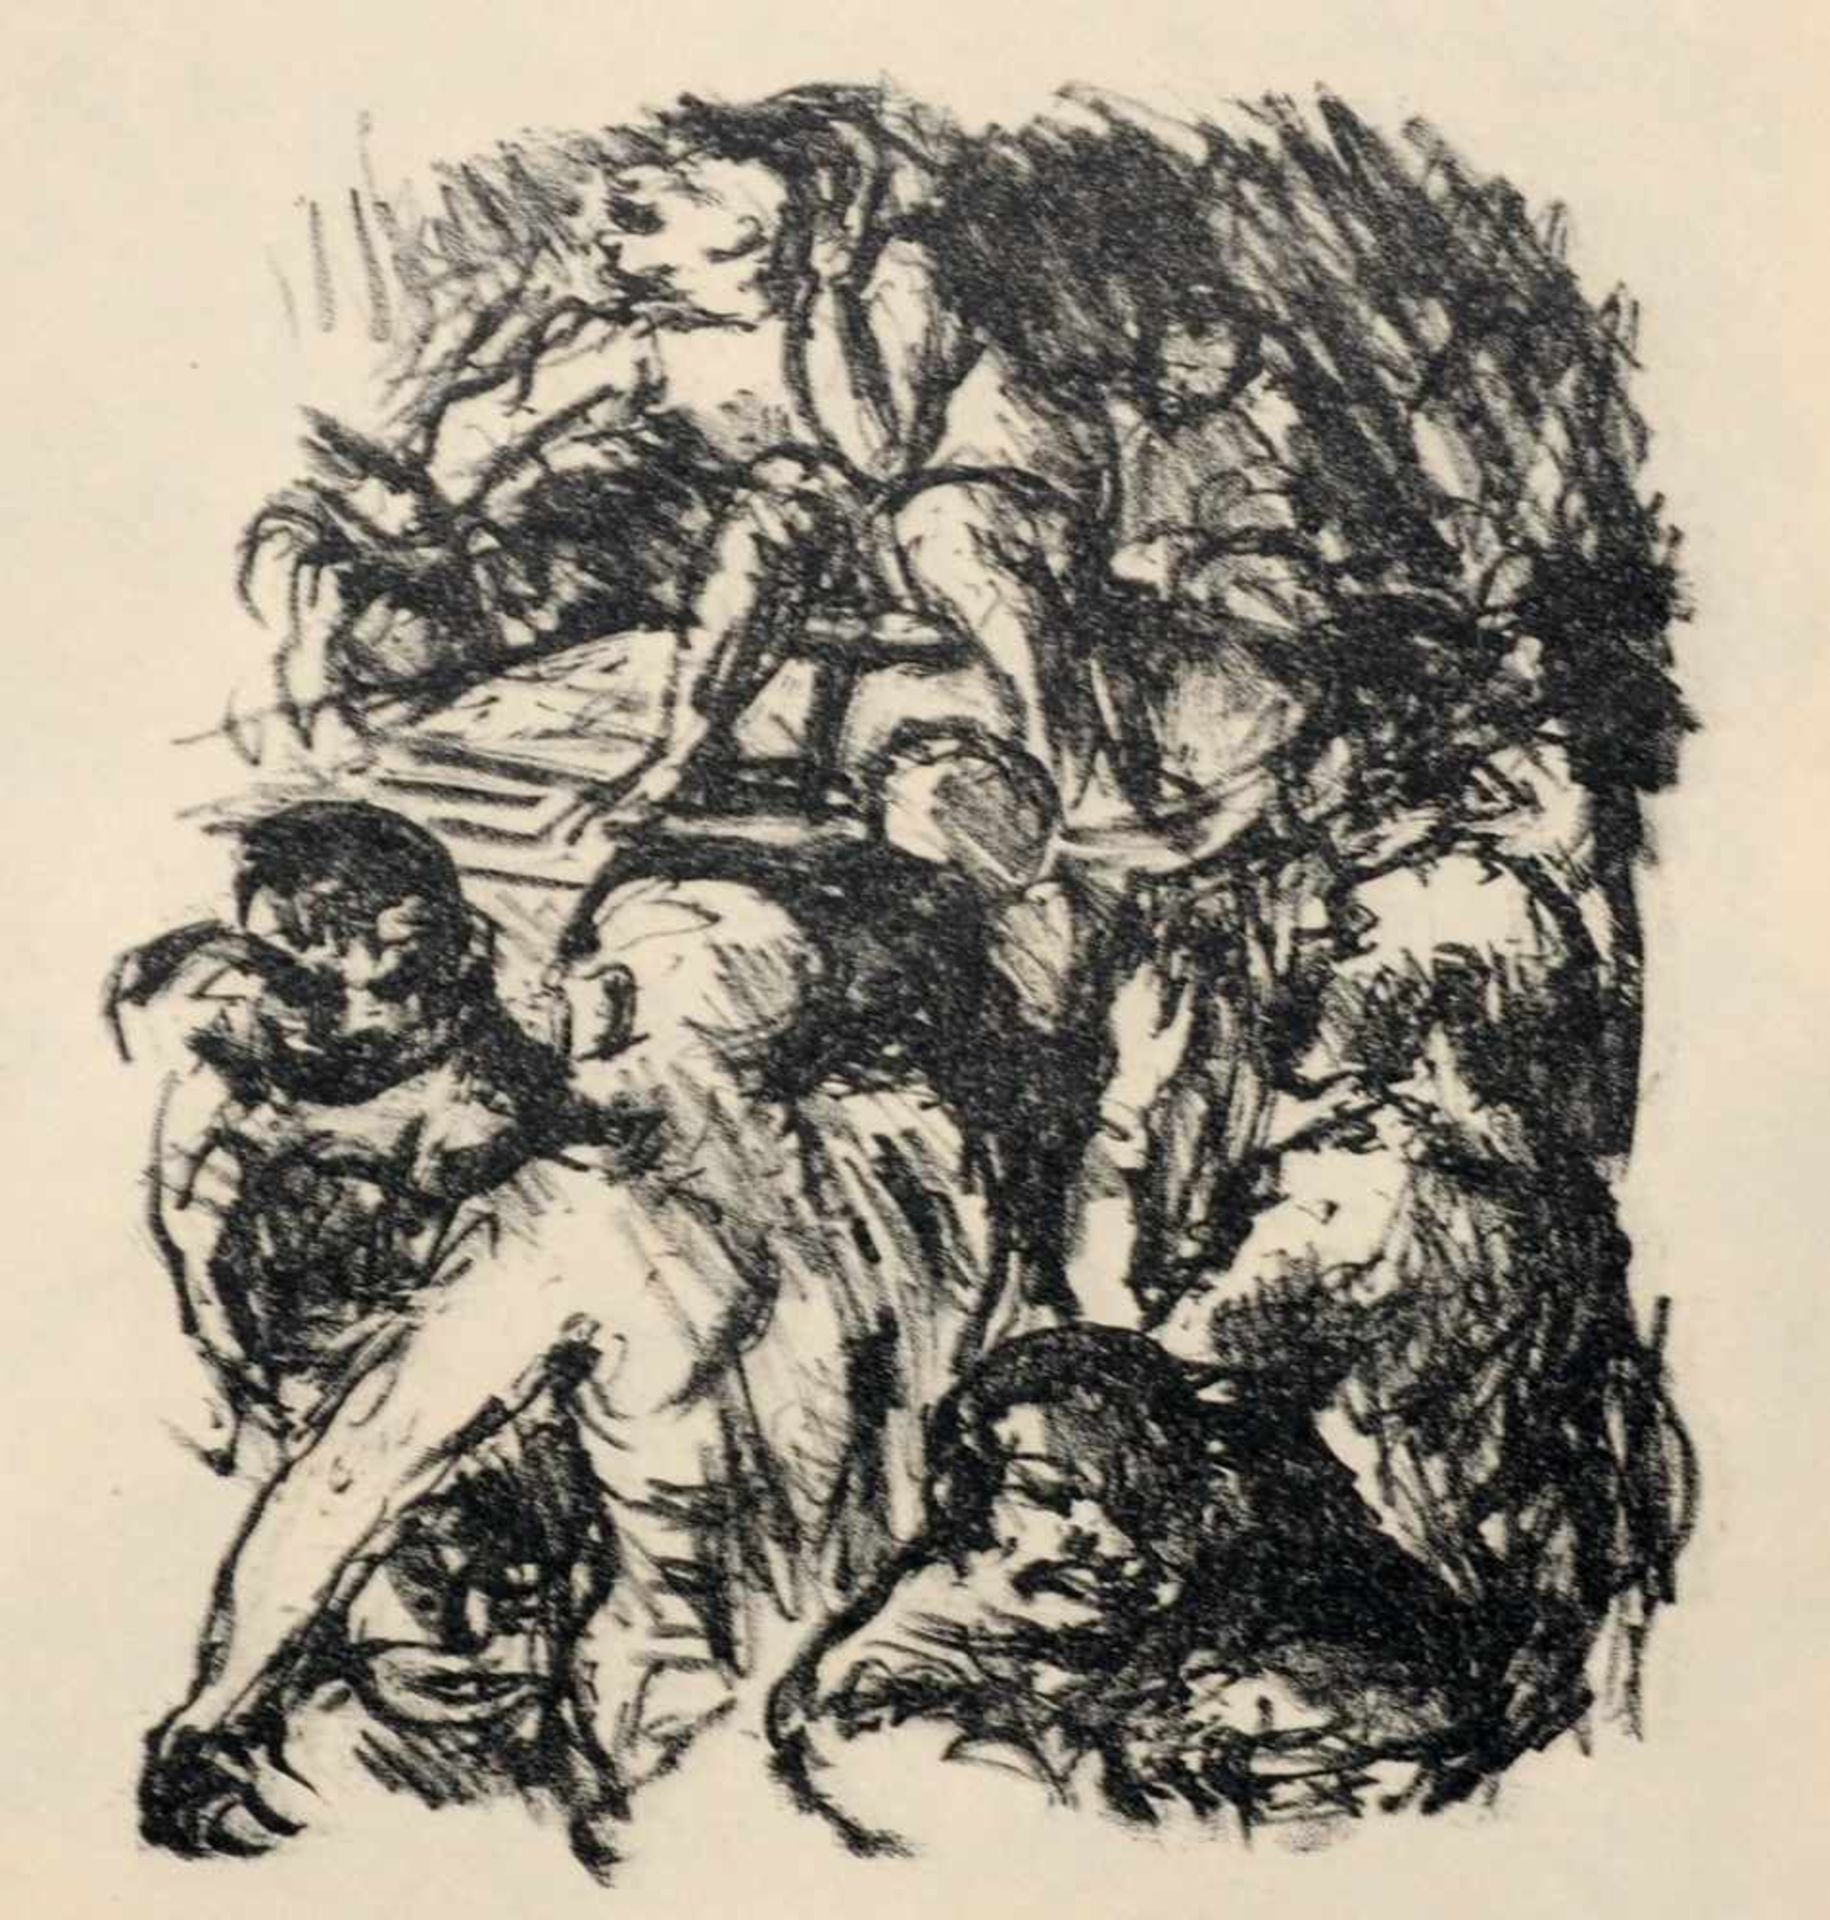 Max Beckmann, Sieben Illustrationen zu Dostojewskijs "Aus einem Totenhaus". 1913.Max Beckmann 1884 - Bild 6 aus 7